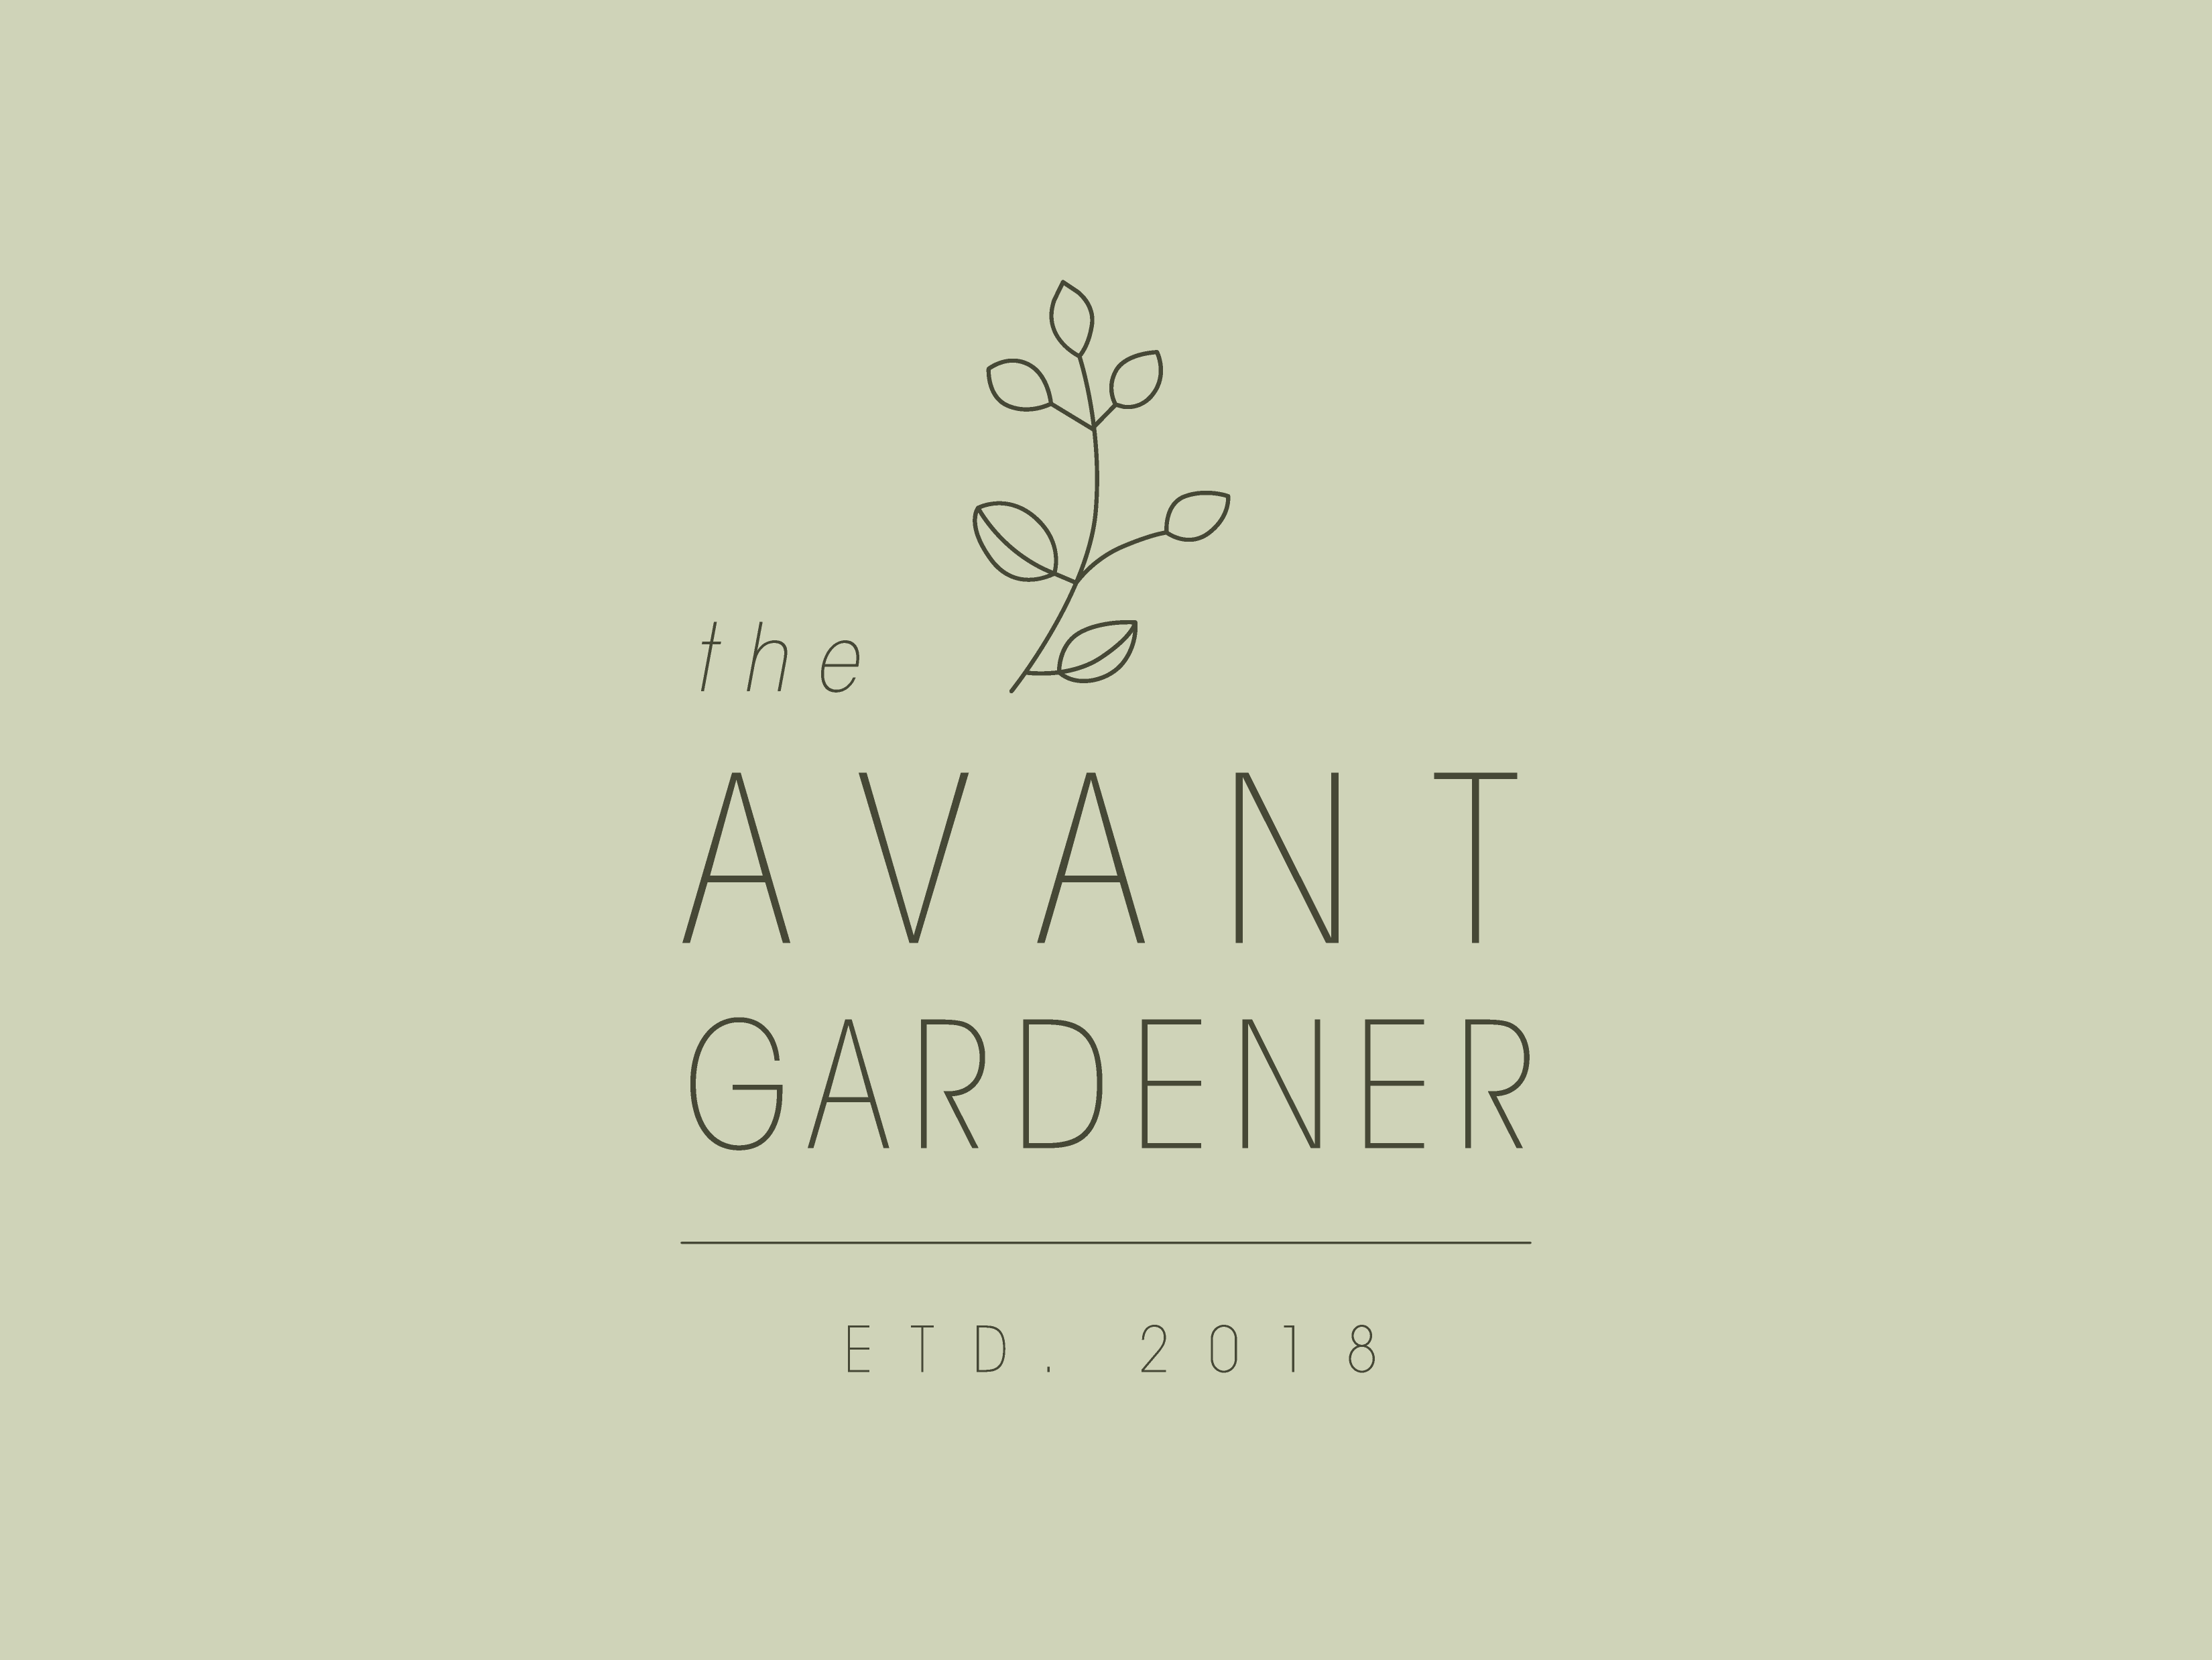 Gardener Logo - Avant Gardener Logo 2 by Sarah Otte on Dribbble